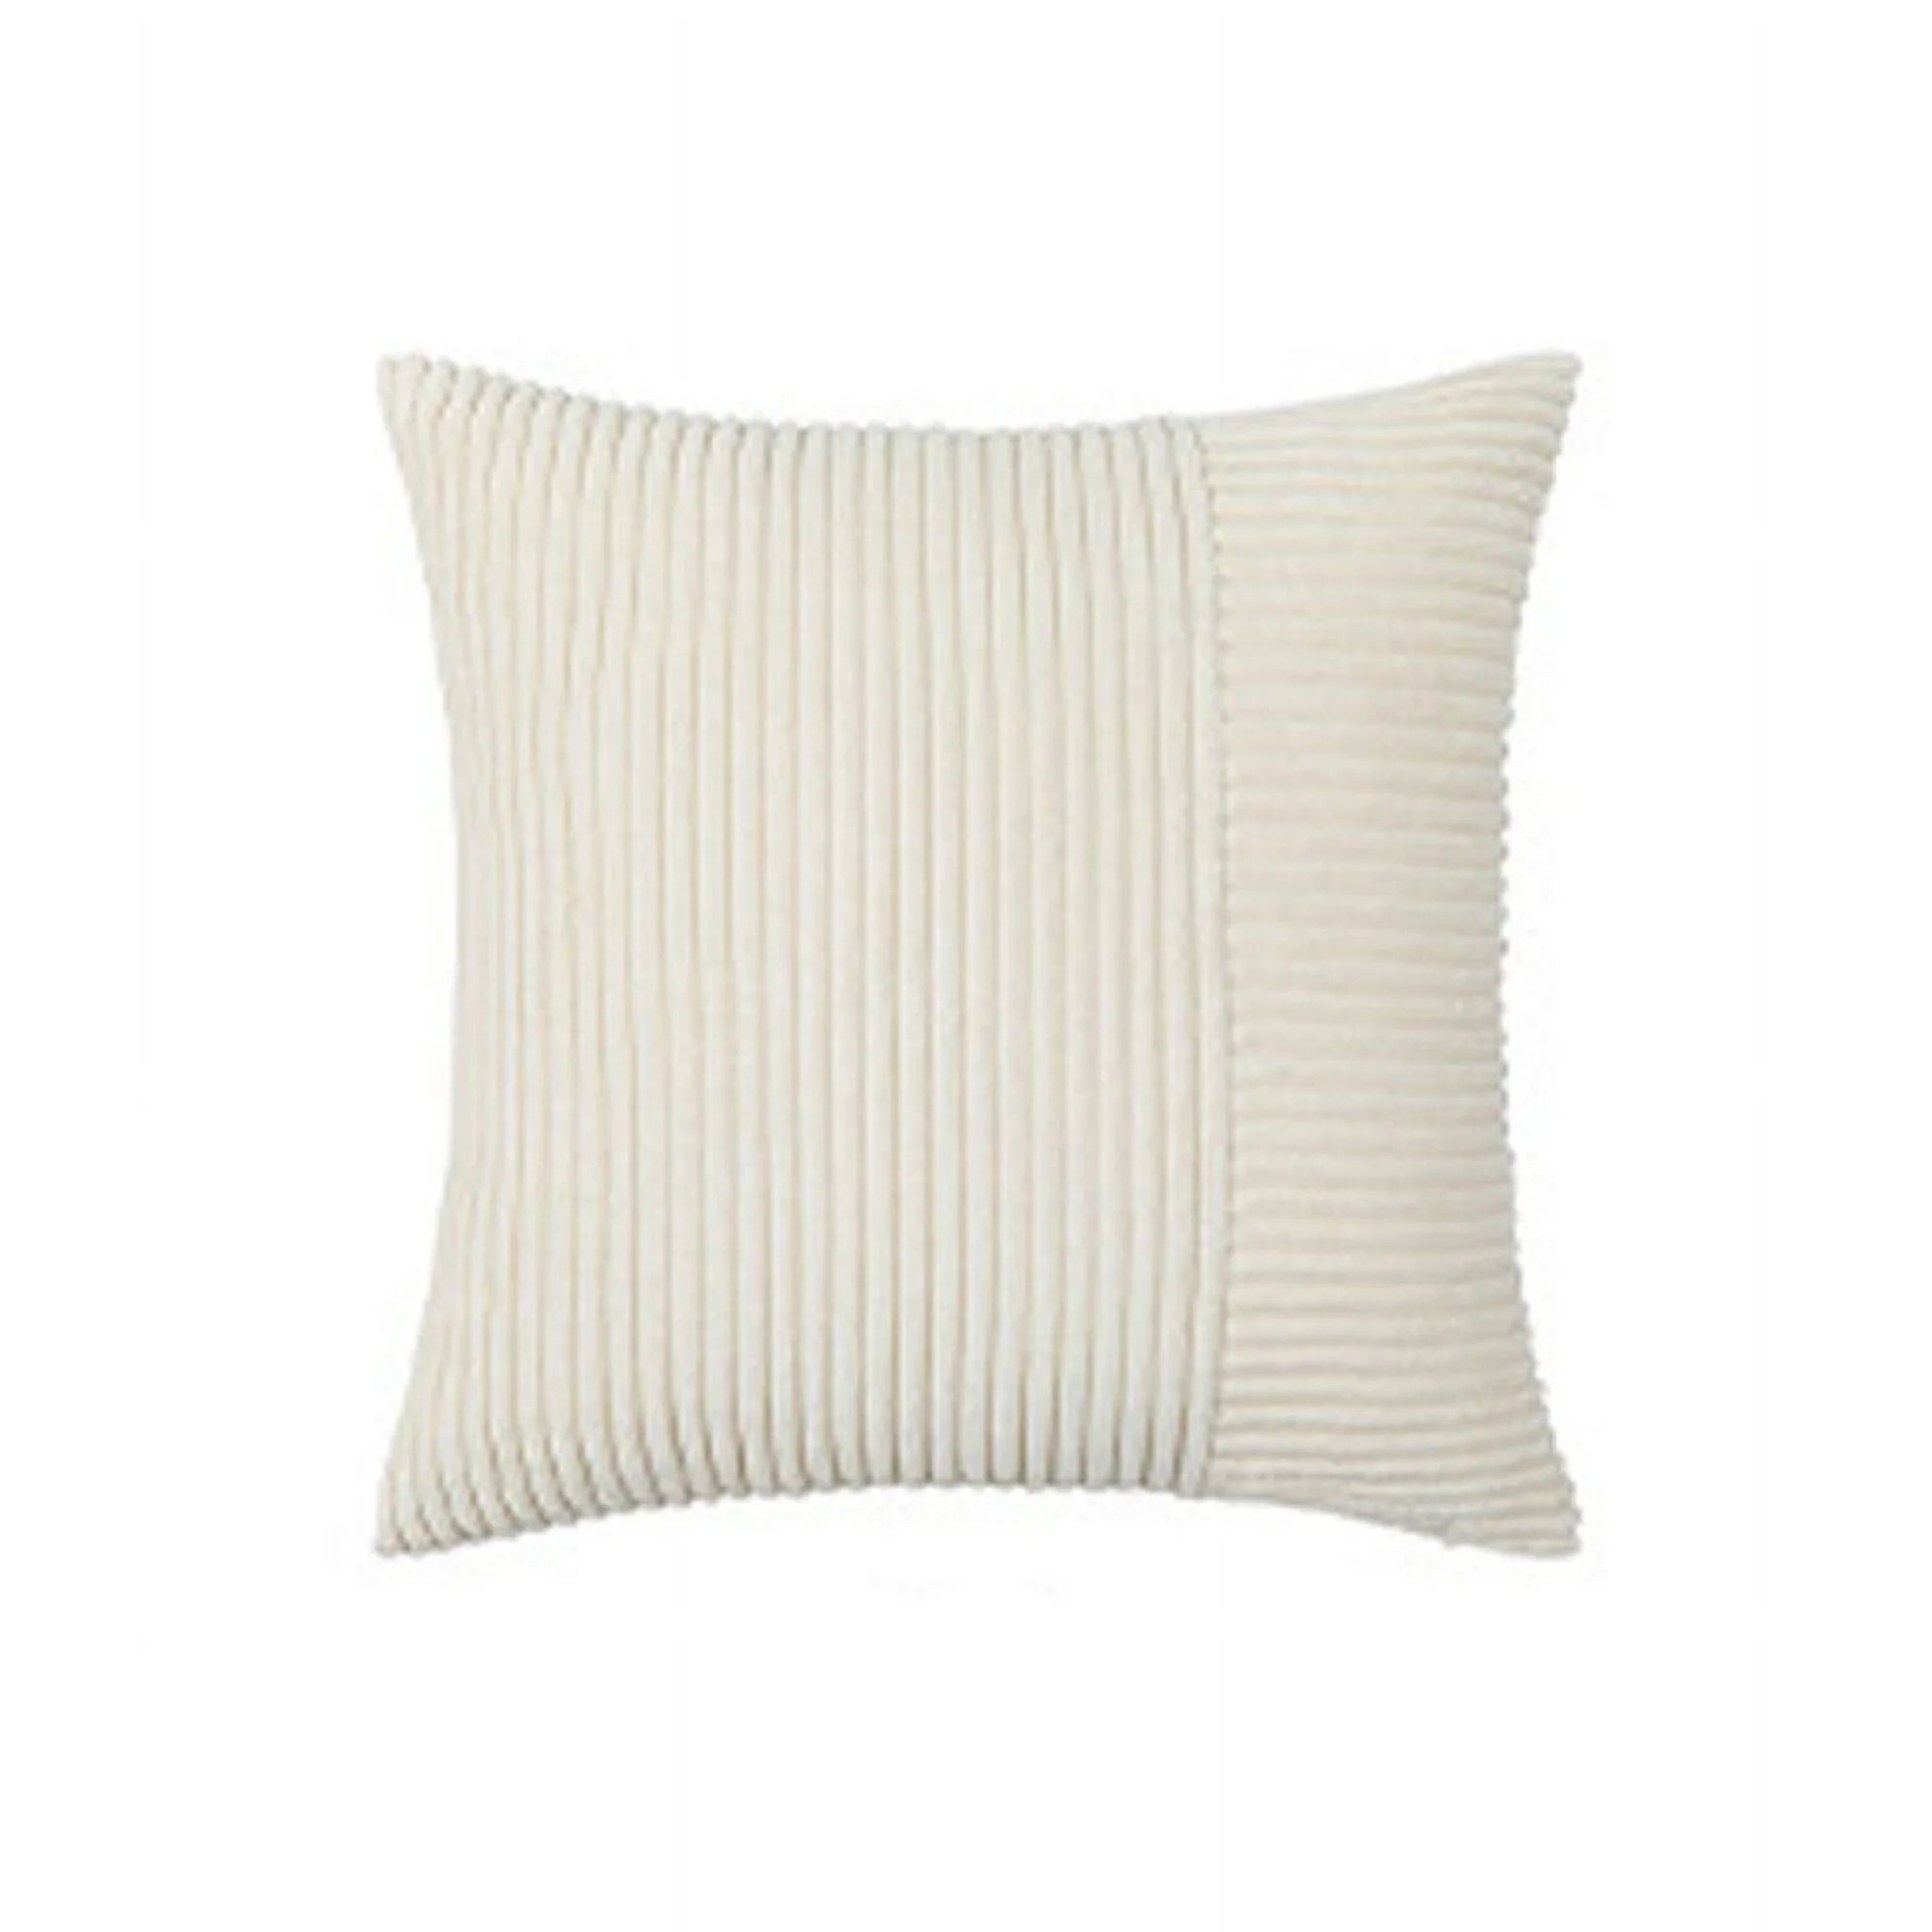 Outdoor Pillows Waterproof Linen Fabric Pillow Decorative Outdoor Pillows Modern Sofa Throw Pillo... | Walmart (US)